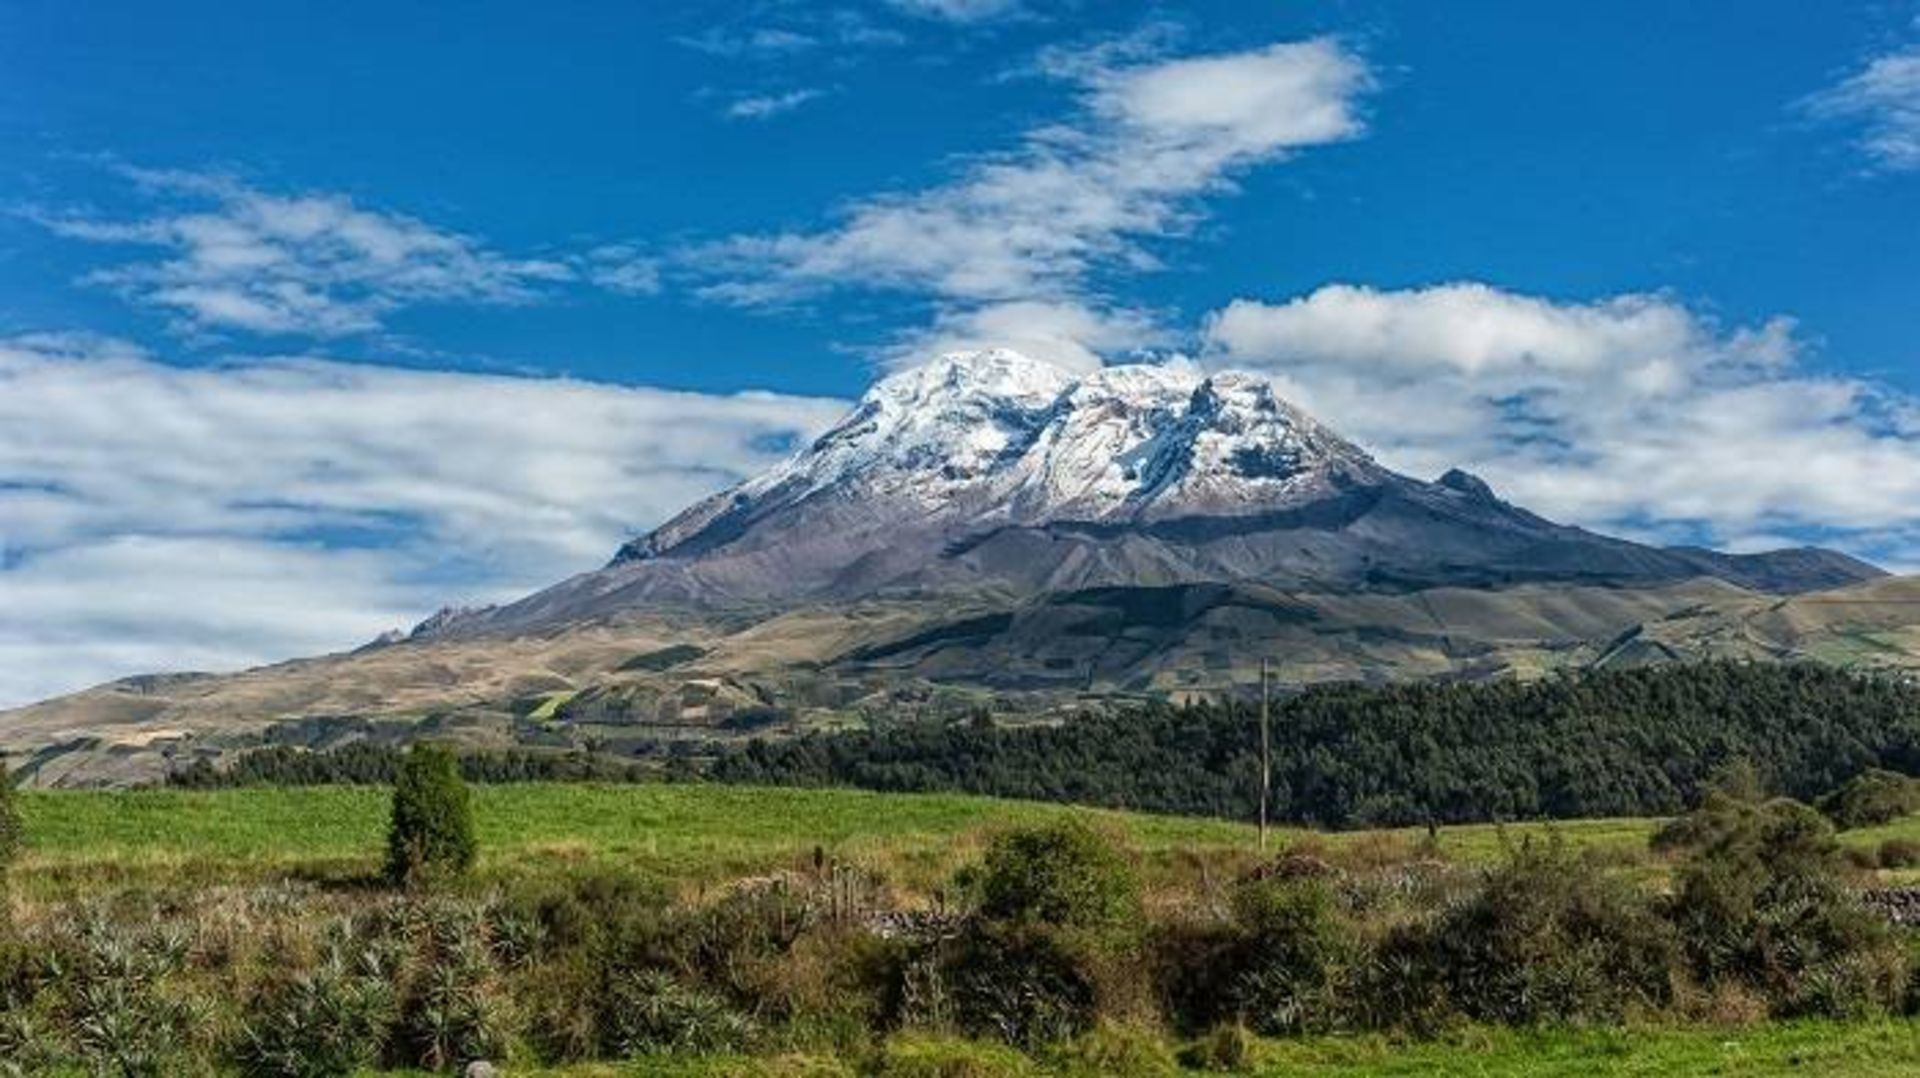 کوه چیمبورازو در اکوادور / Mount Chimborazo 